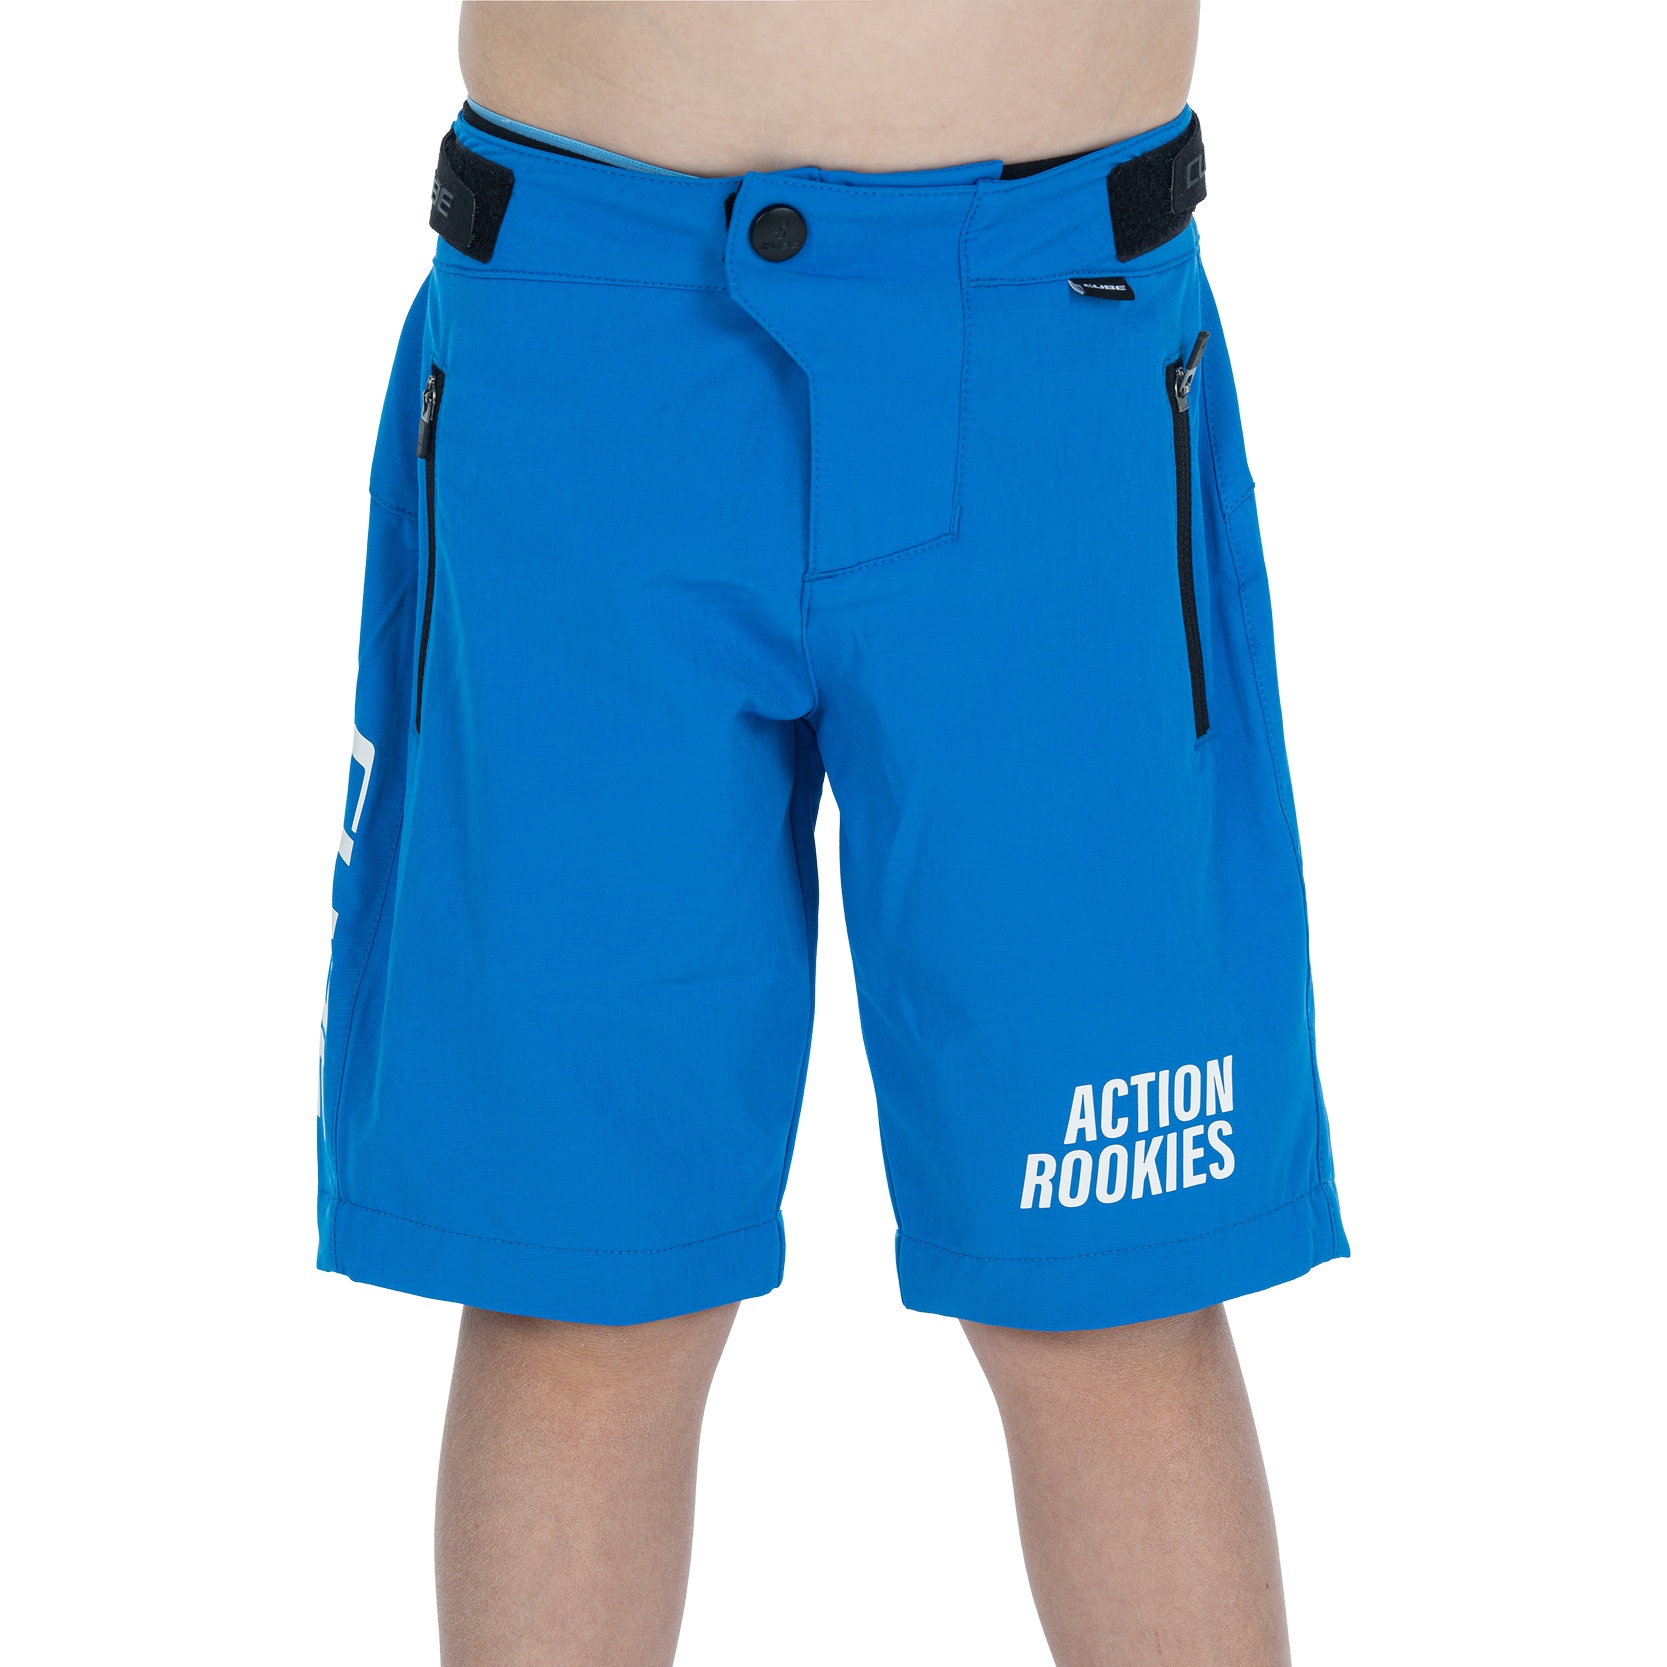 Produktbild von CUBE VERTEX ROOKIE X Actionteam Baggy Shorts Kinder - blau